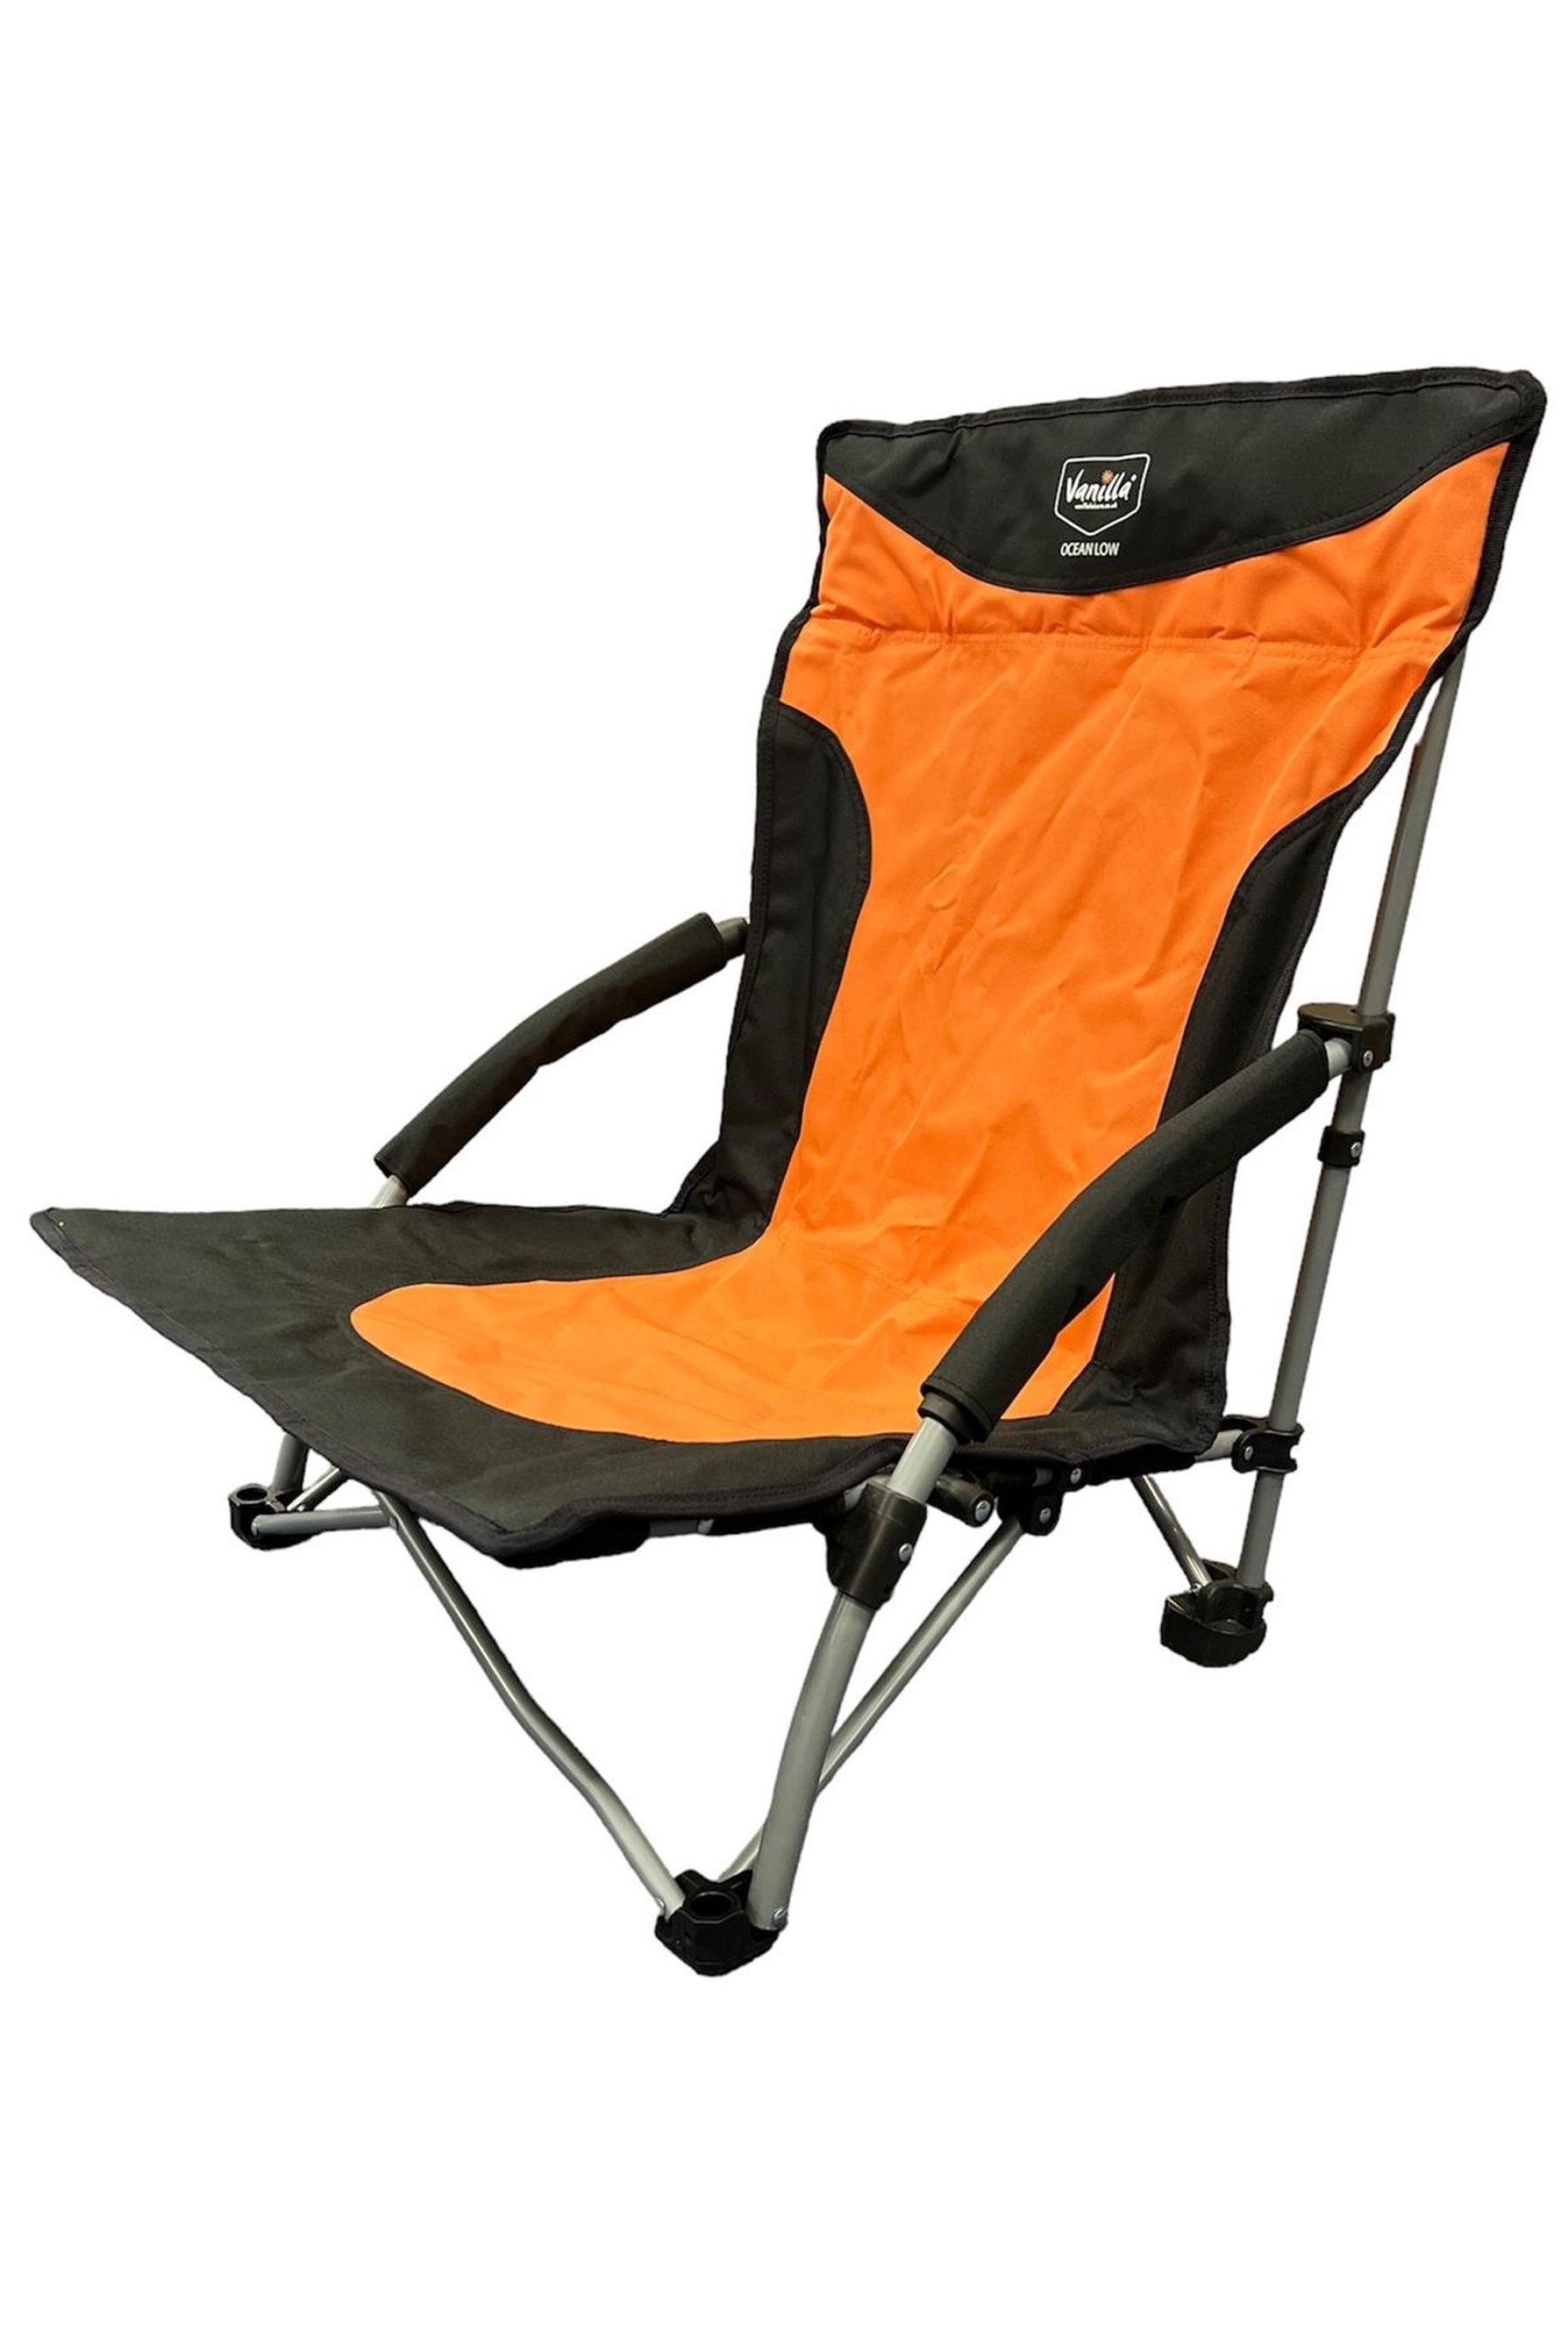 Ocean Low Folding Beach Chair -